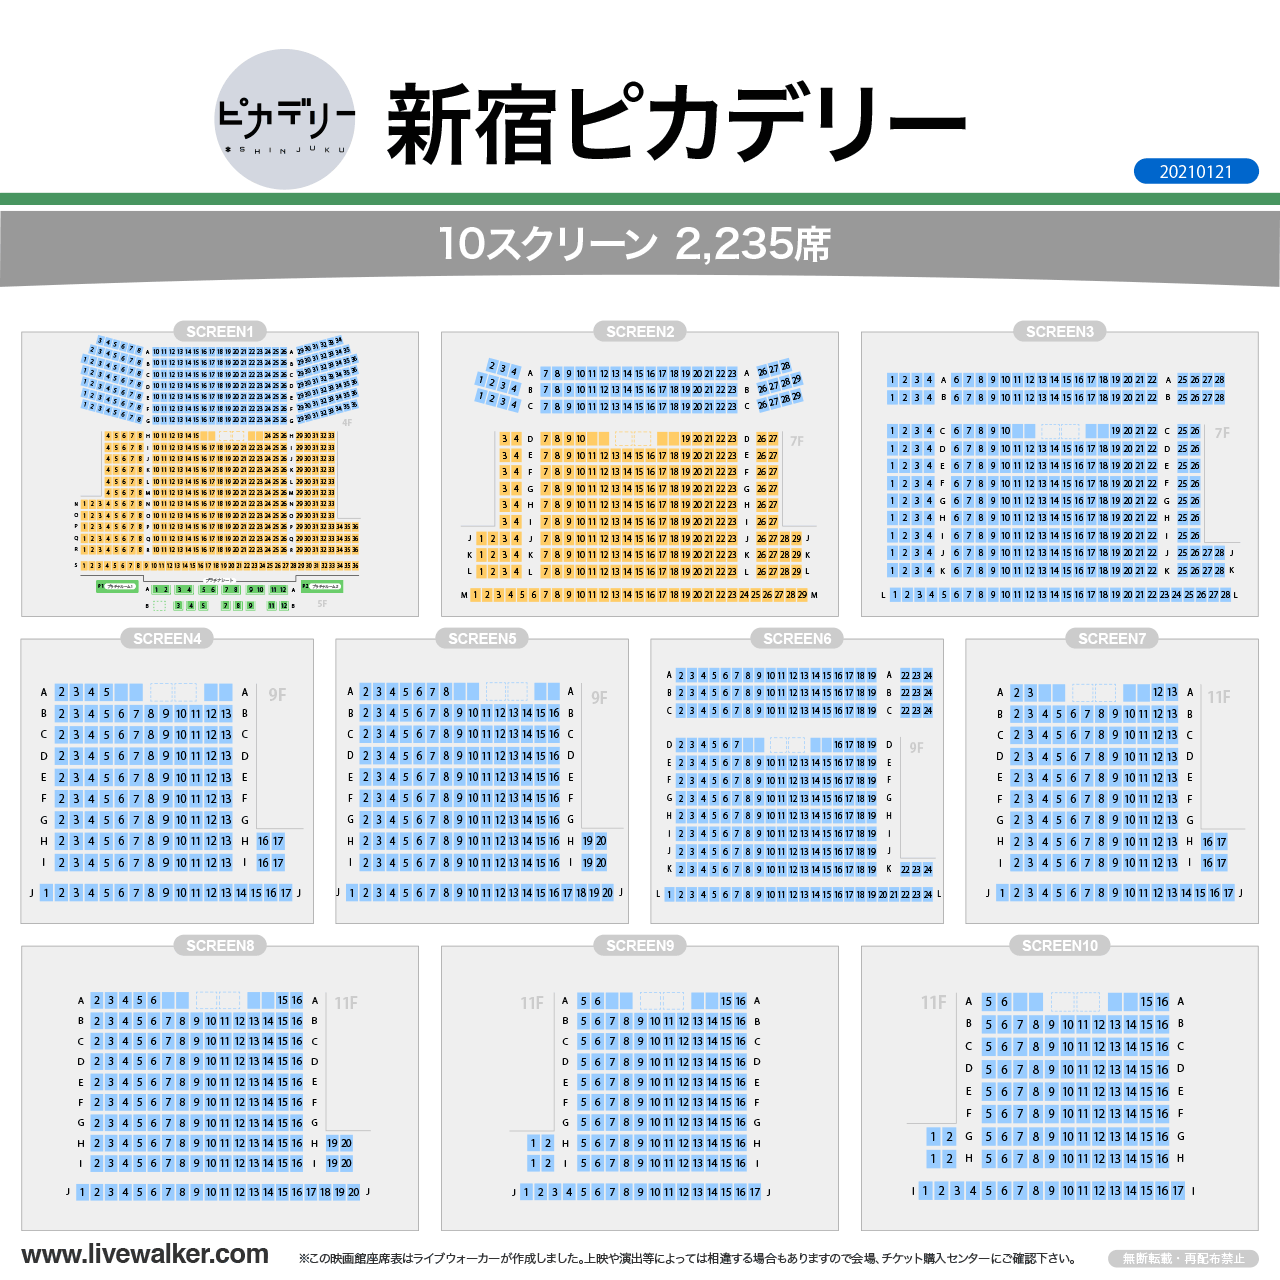 新宿ピカデリースクリーンの座席表